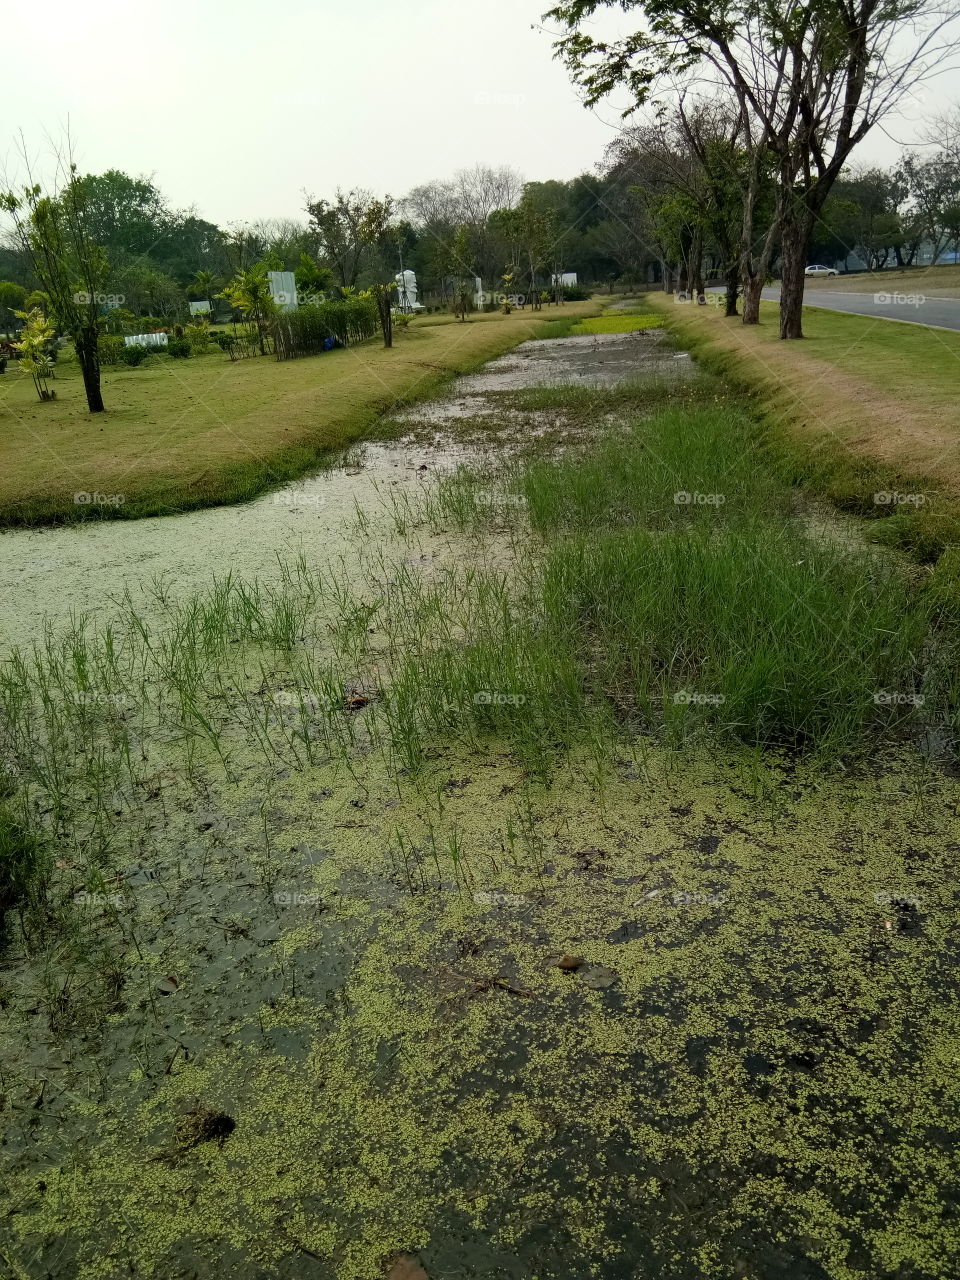 river
land 
grass
green